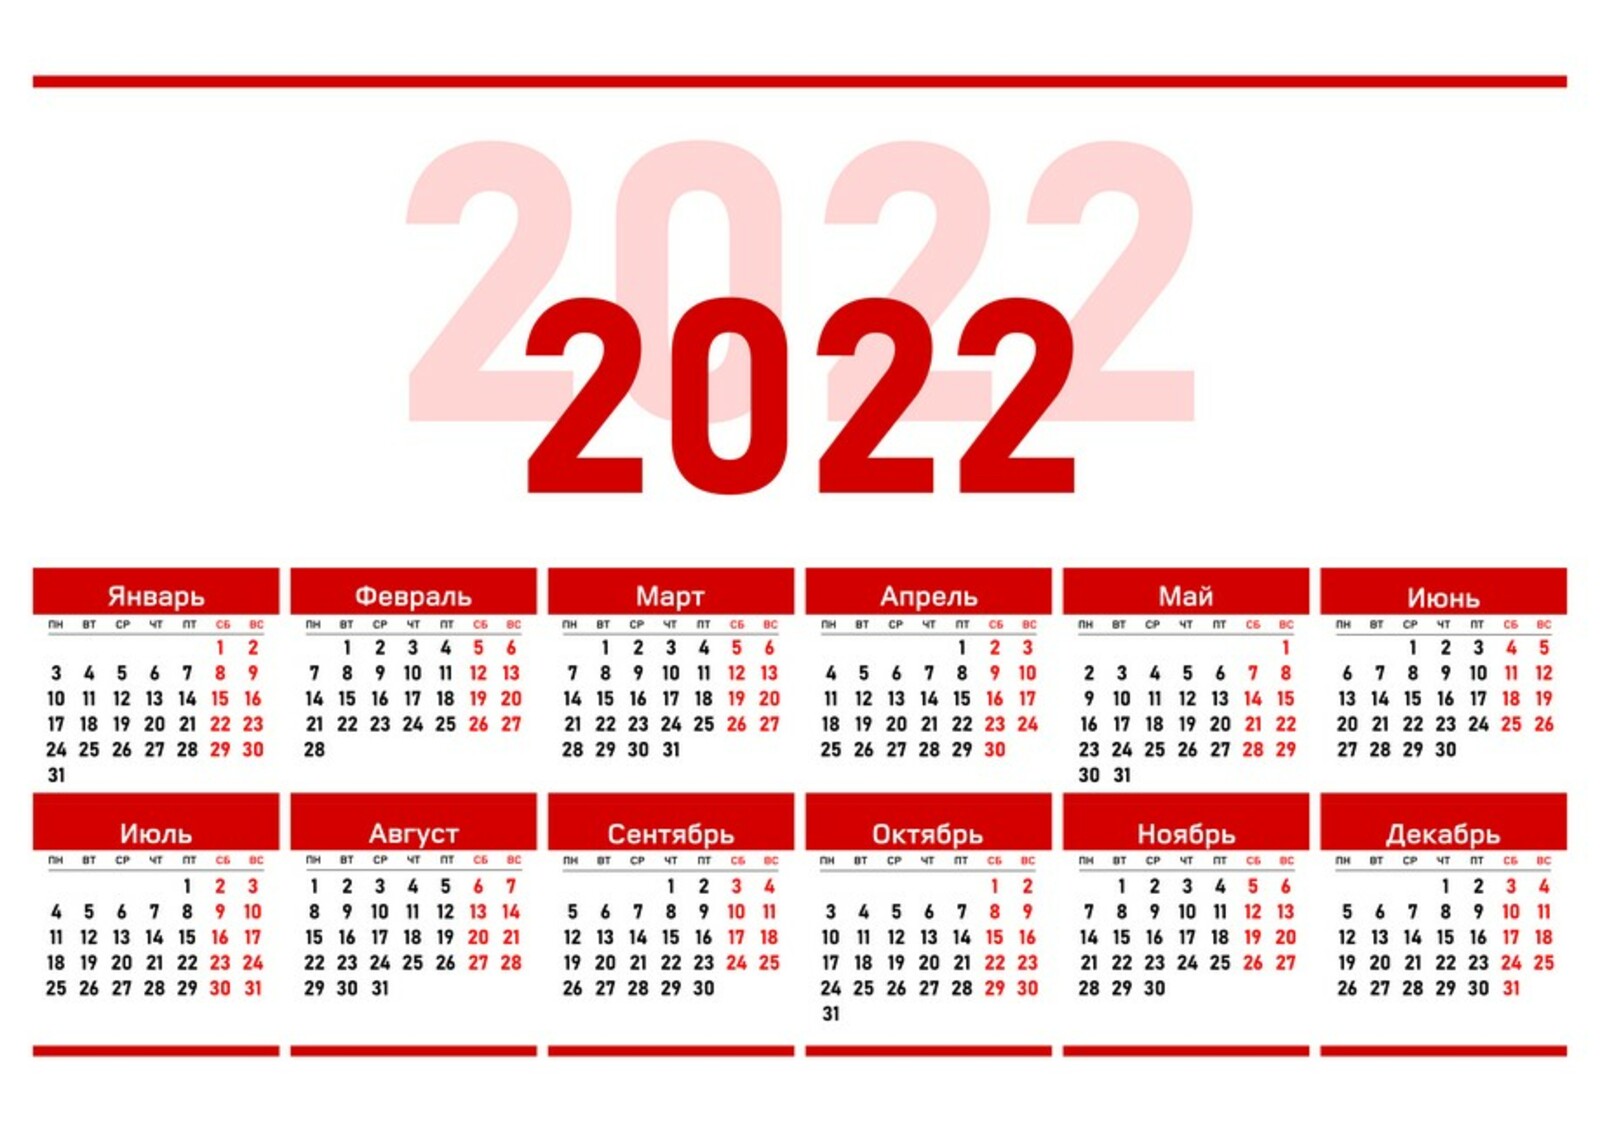 Декабрь 30 выходной. Производственный календарь 2022. Календарь на 2022 год ЛНР. Официальные праздники 2022 года в России. Выходные дни в 2022 году в России.